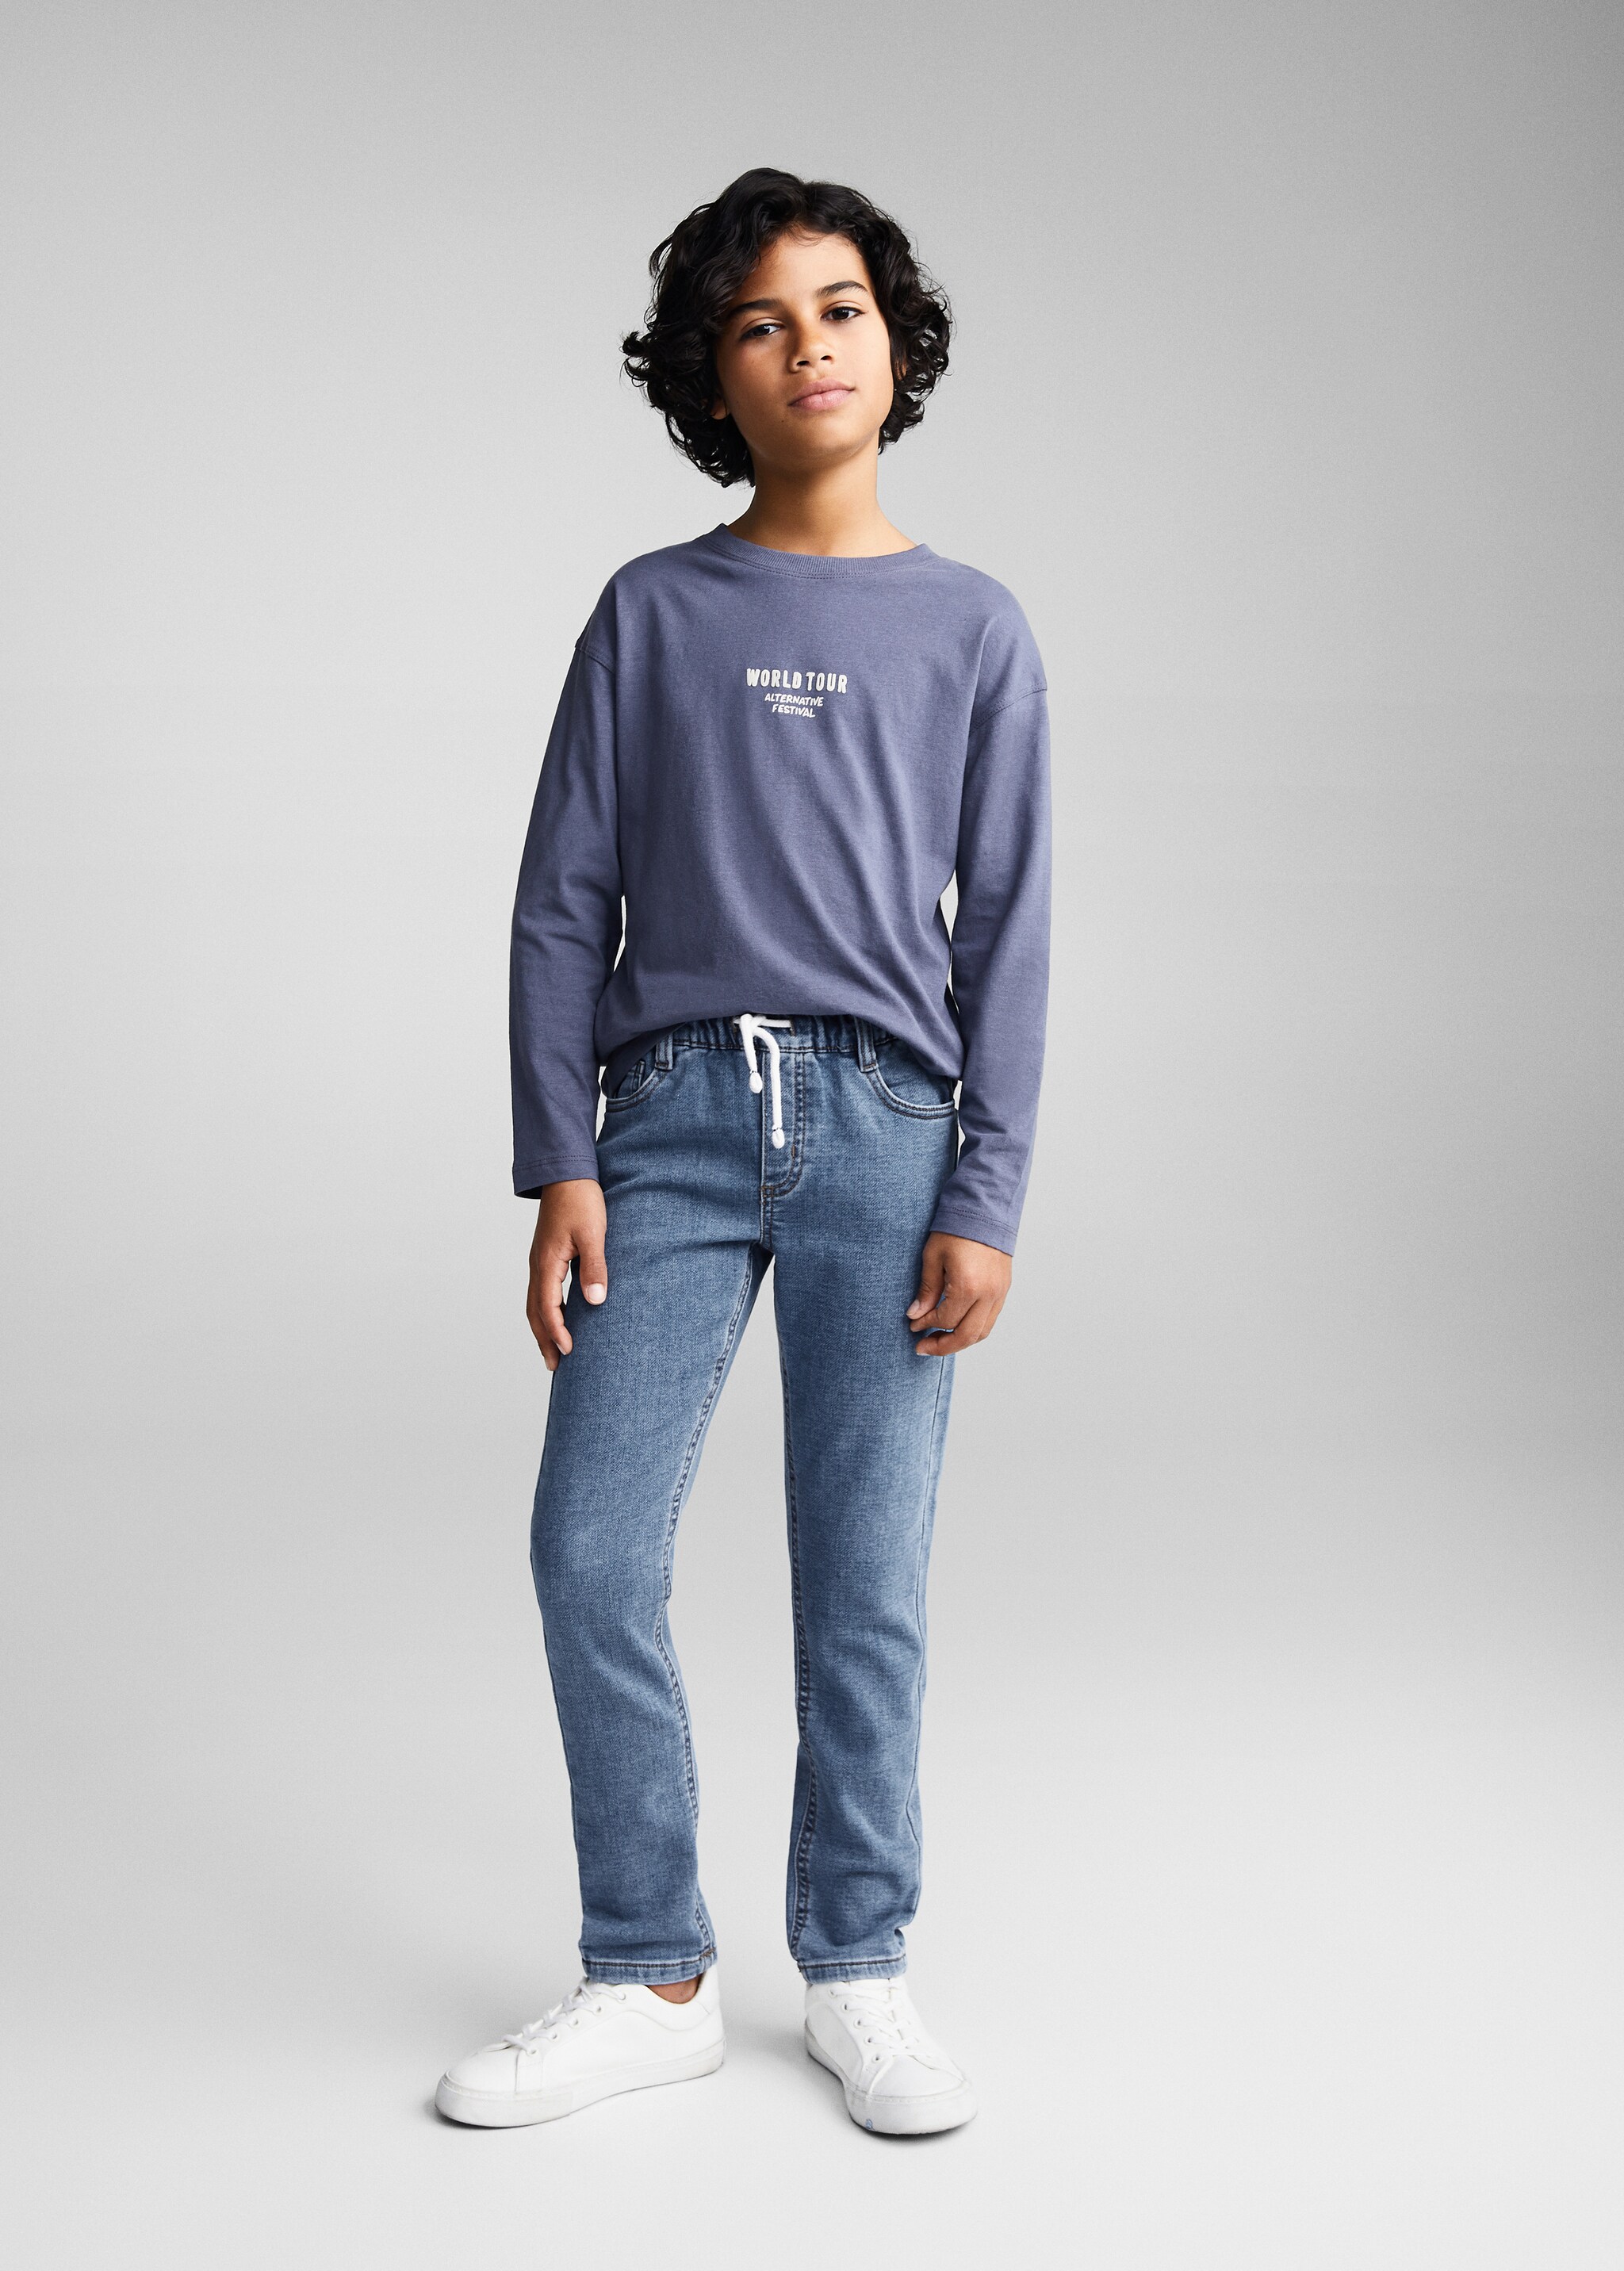 Jeans cintura elástica - Plano geral